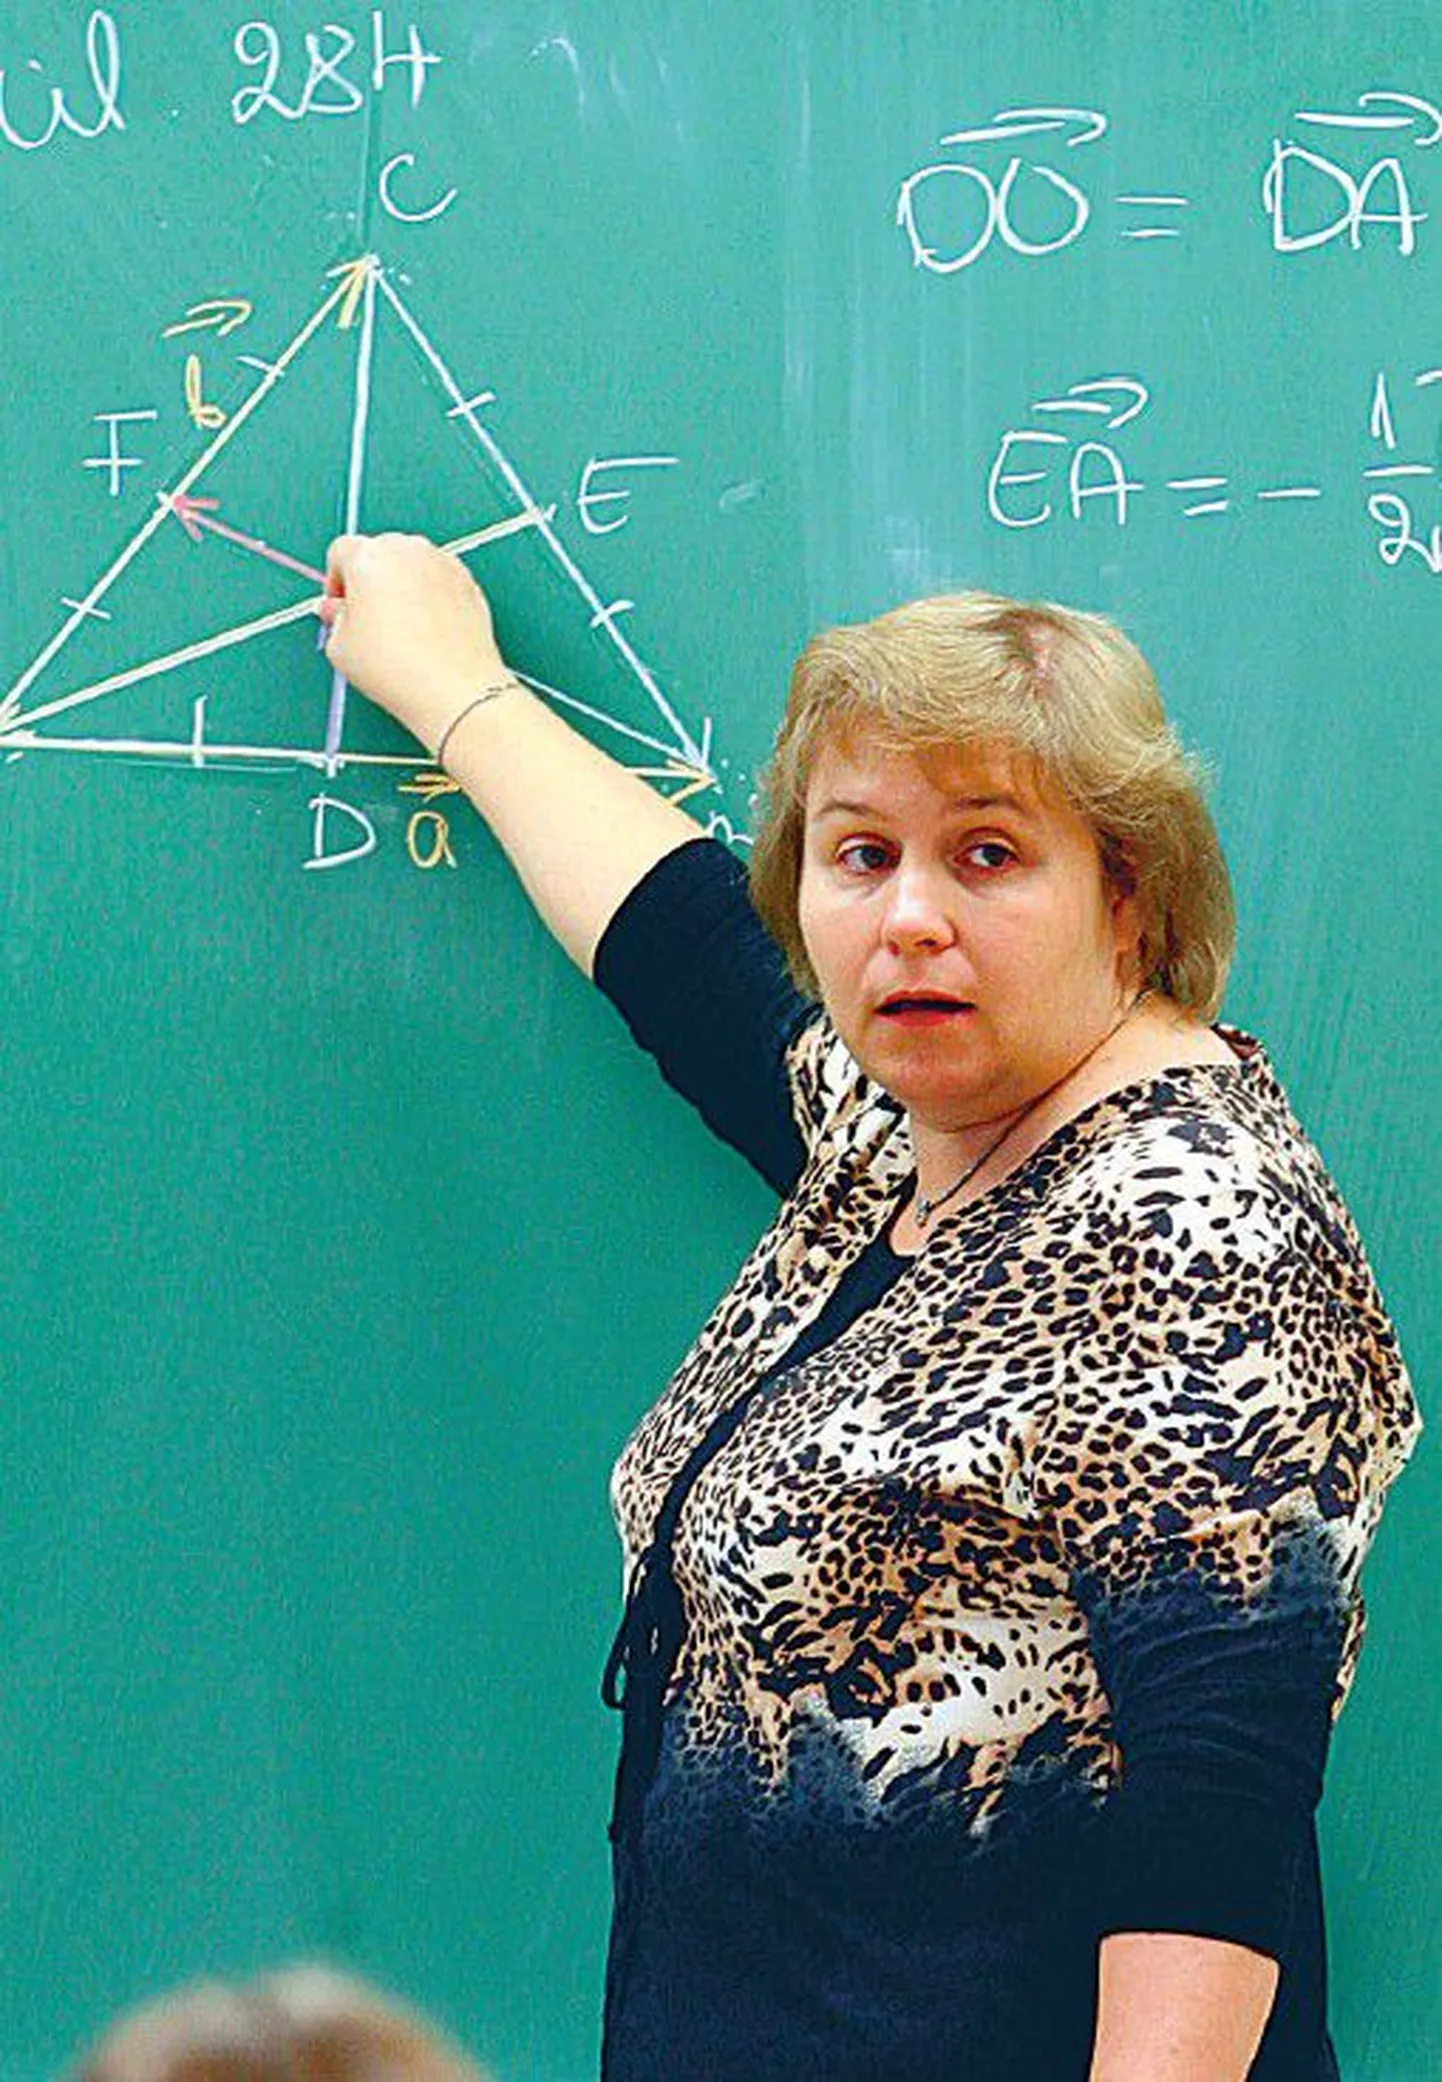 Jüri gümnaasiumi matemaatikaõpetaja Kersti Kaldmäe sõnul peaks põhikooli- ja gümnaasiumiseaduse eelnõus olema õpetajate õigused täpsemalt kirjas.